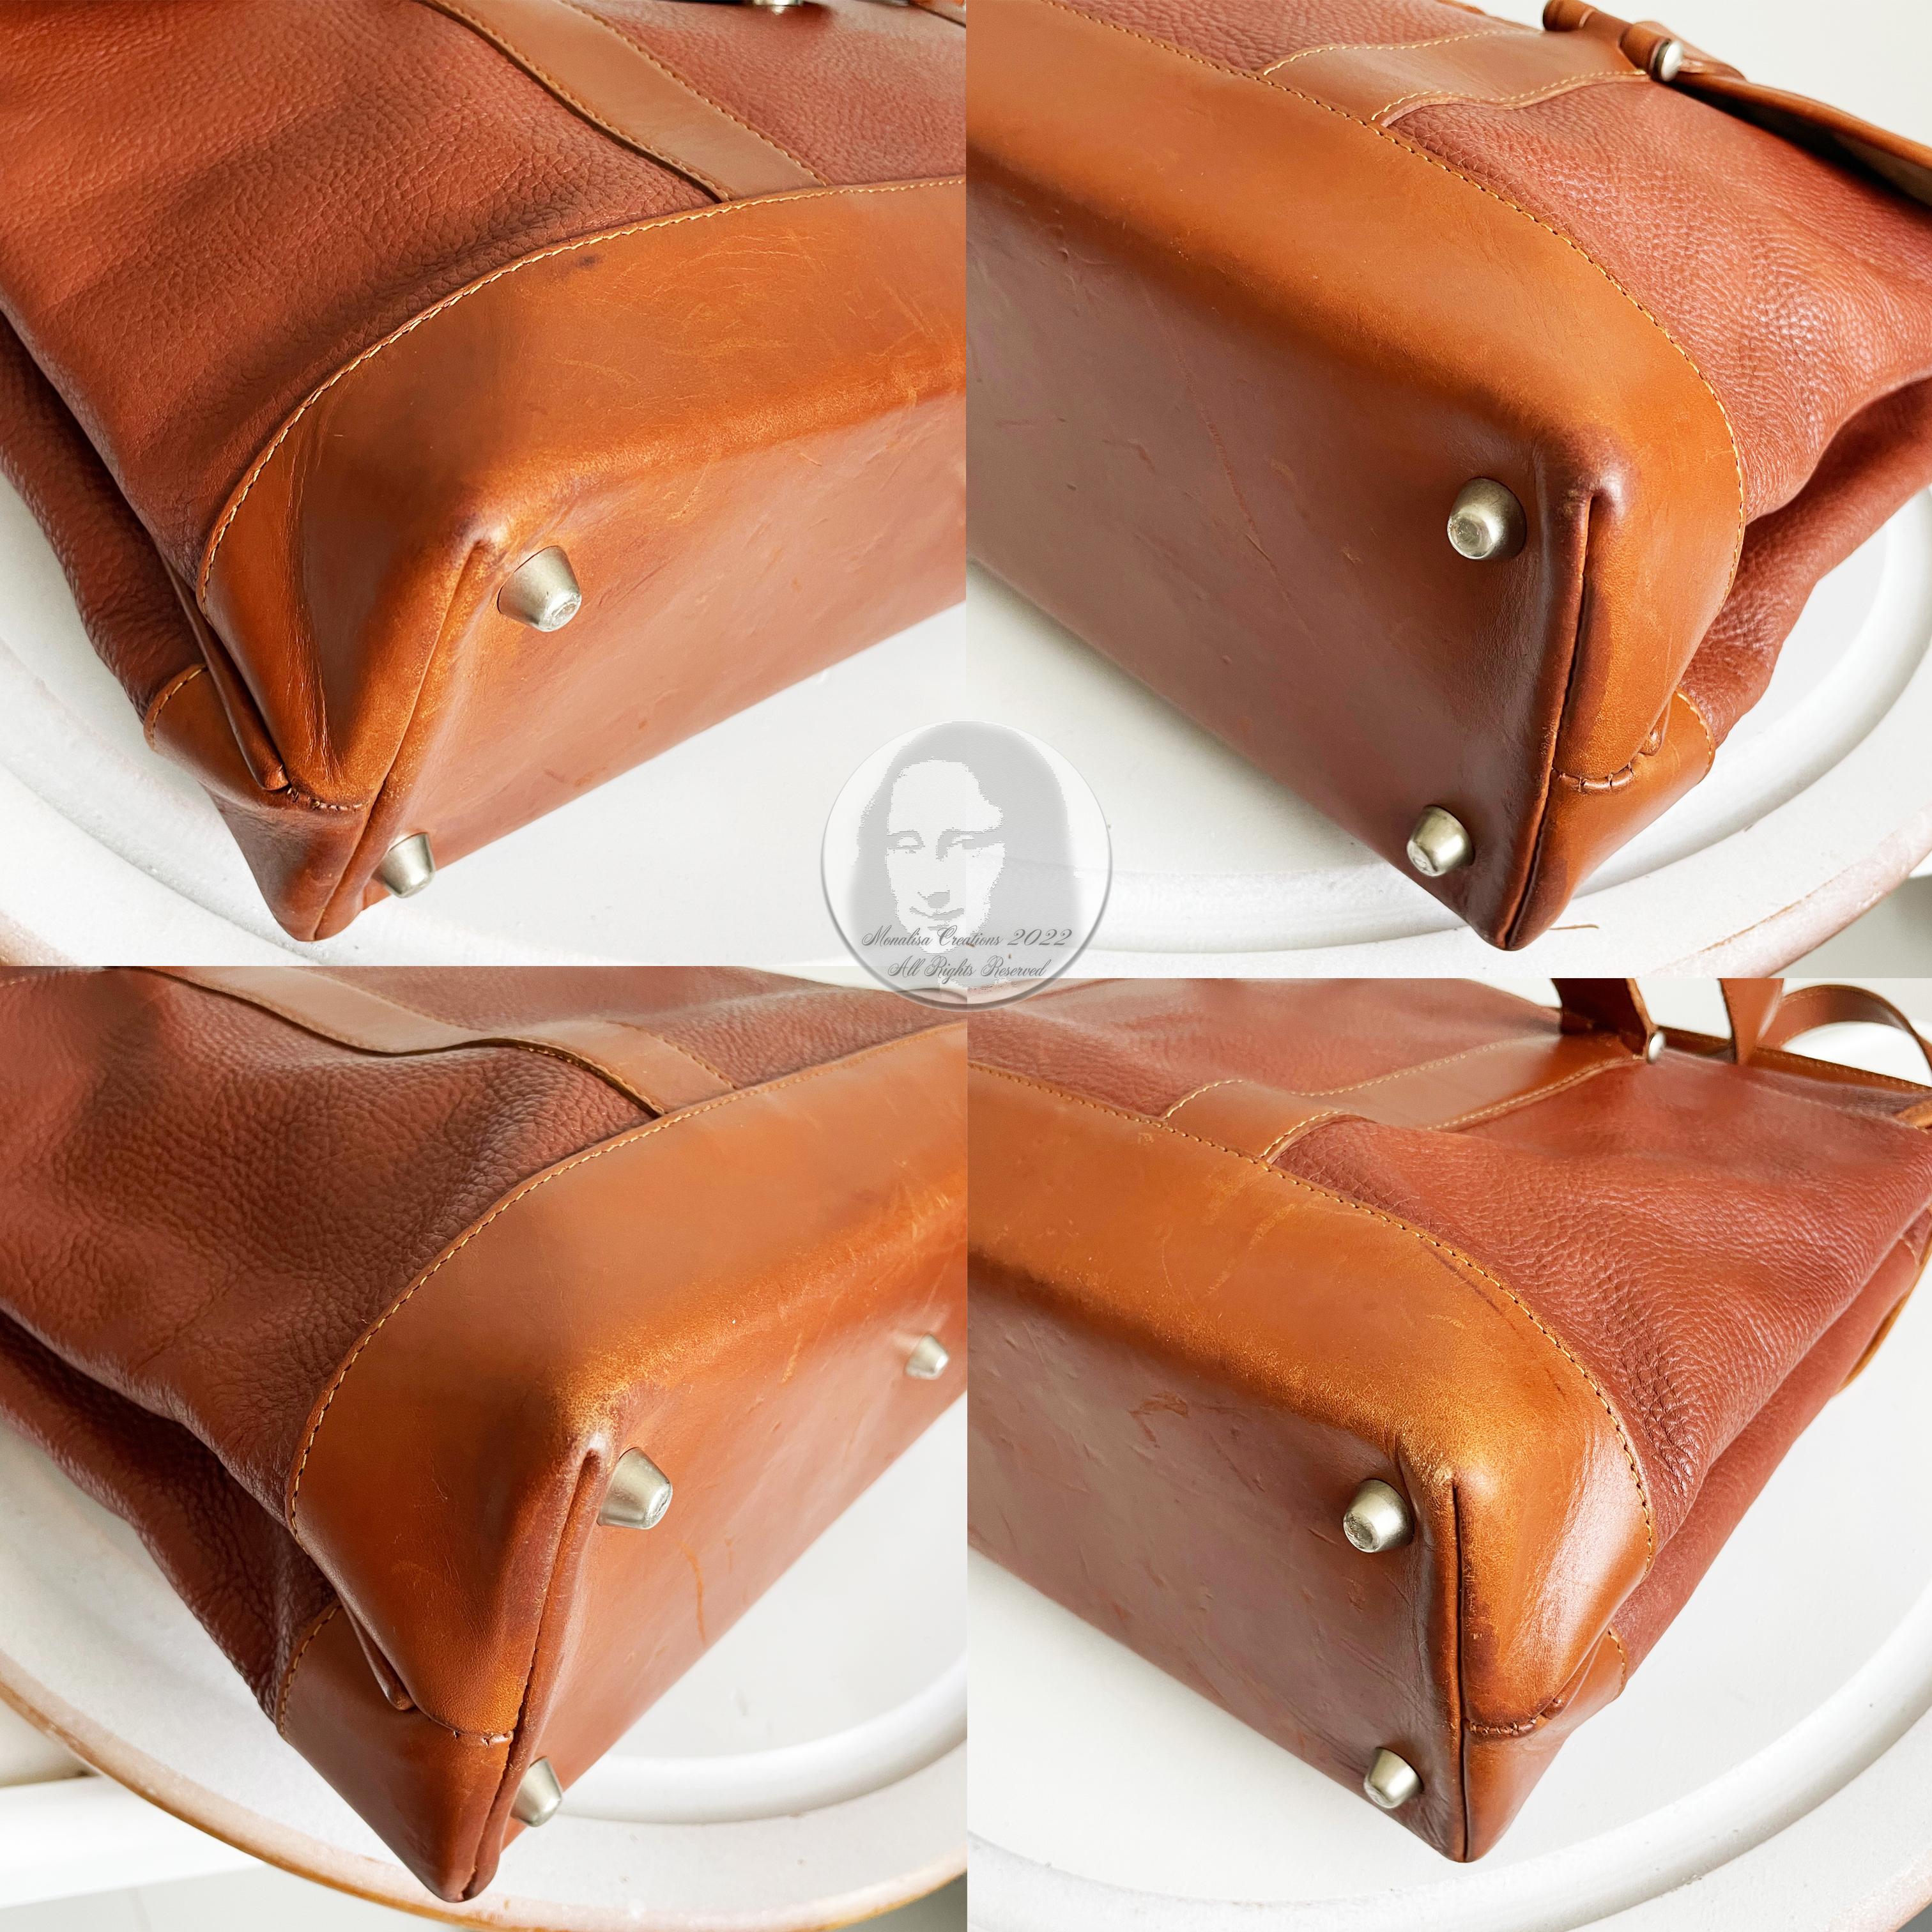 Hartmann Business Bag Briefcase Computer or Shoulder Bag British Tan Leather 6